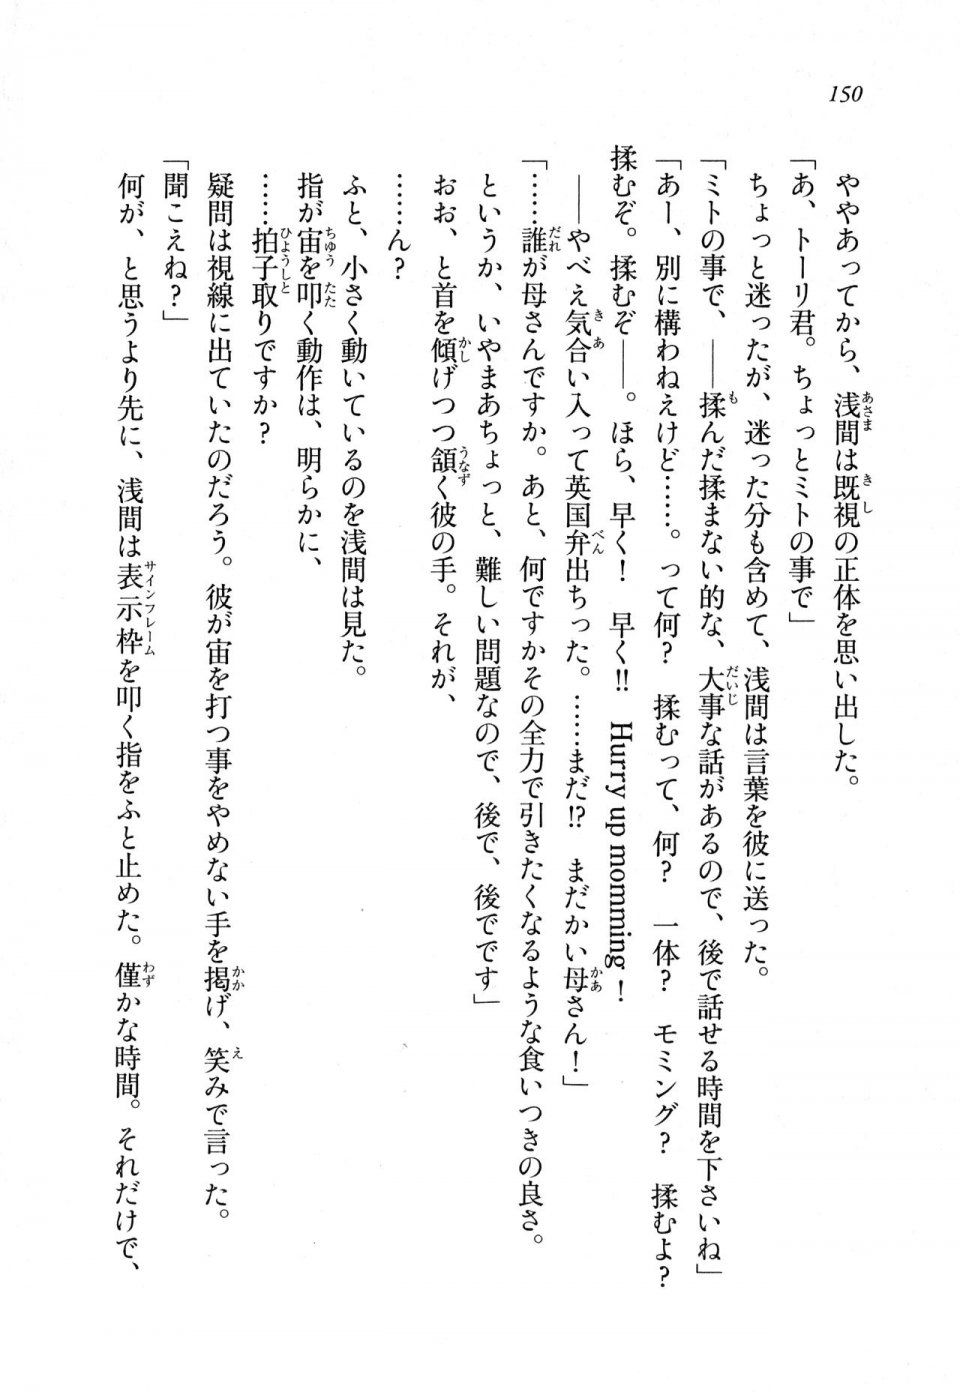 Kyoukai Senjou no Horizon LN Sidestory Vol 1 - Photo #148